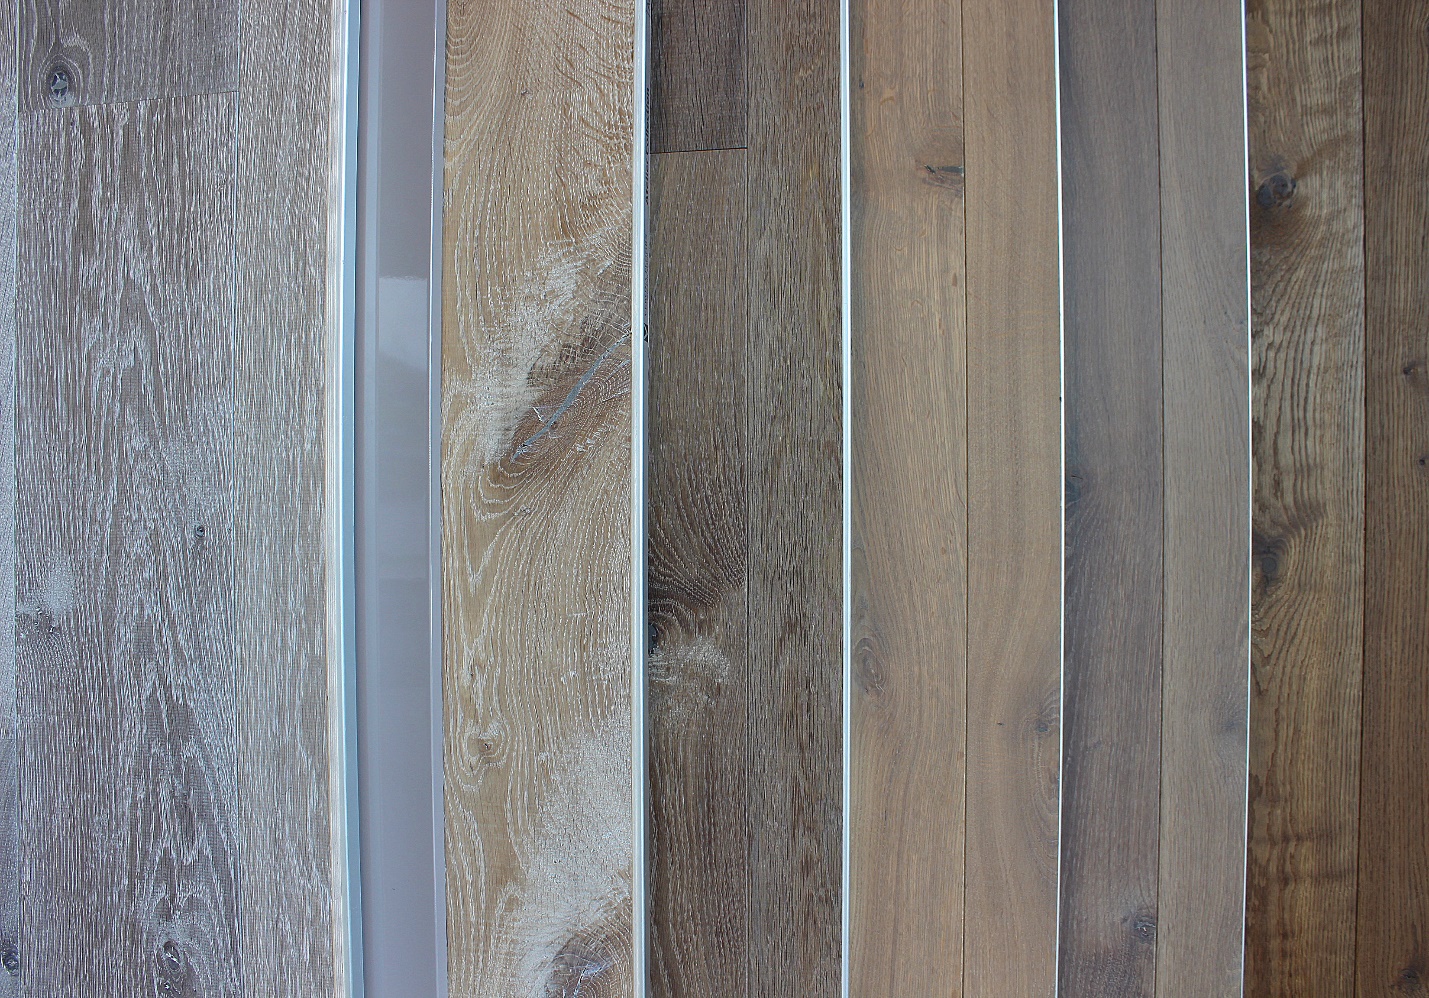 Patterned Hardwood Floors